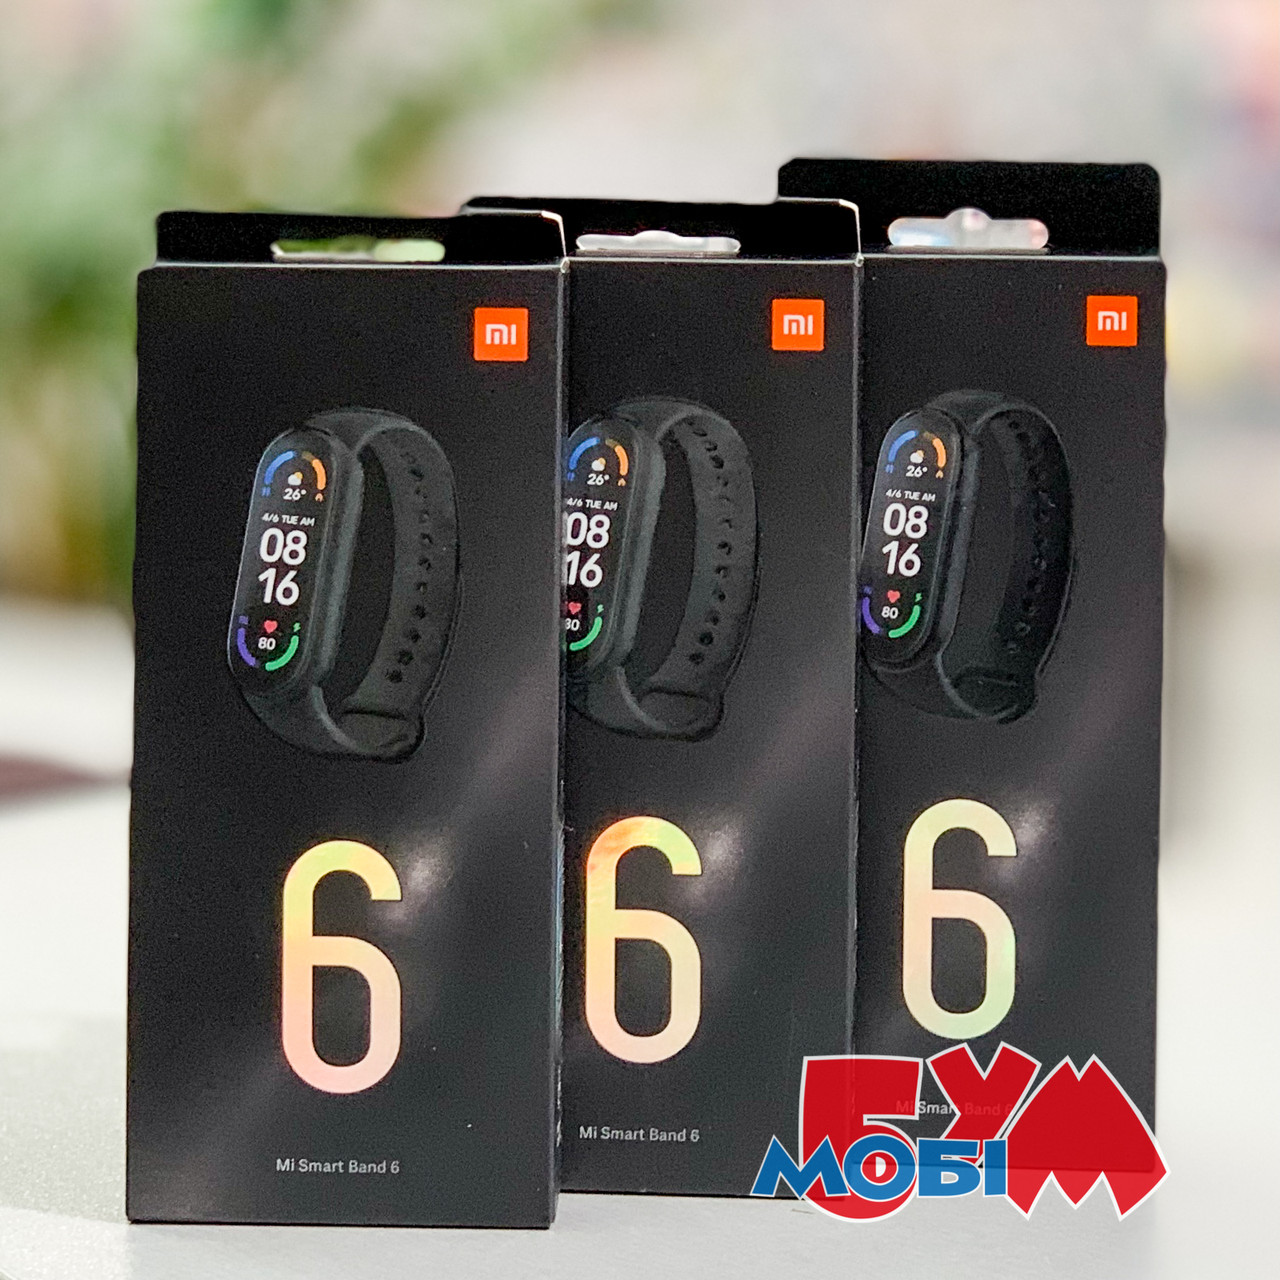 Фитнес-браслет Xiaomi Mi Band 6 Оригинал! Для взрослых Умные браслеты Цветной Черный Акселерометр Гироскоп Пульсометр Пылевлагозащищенный корпус Съемный ремешок Звуковое Вибрация Android